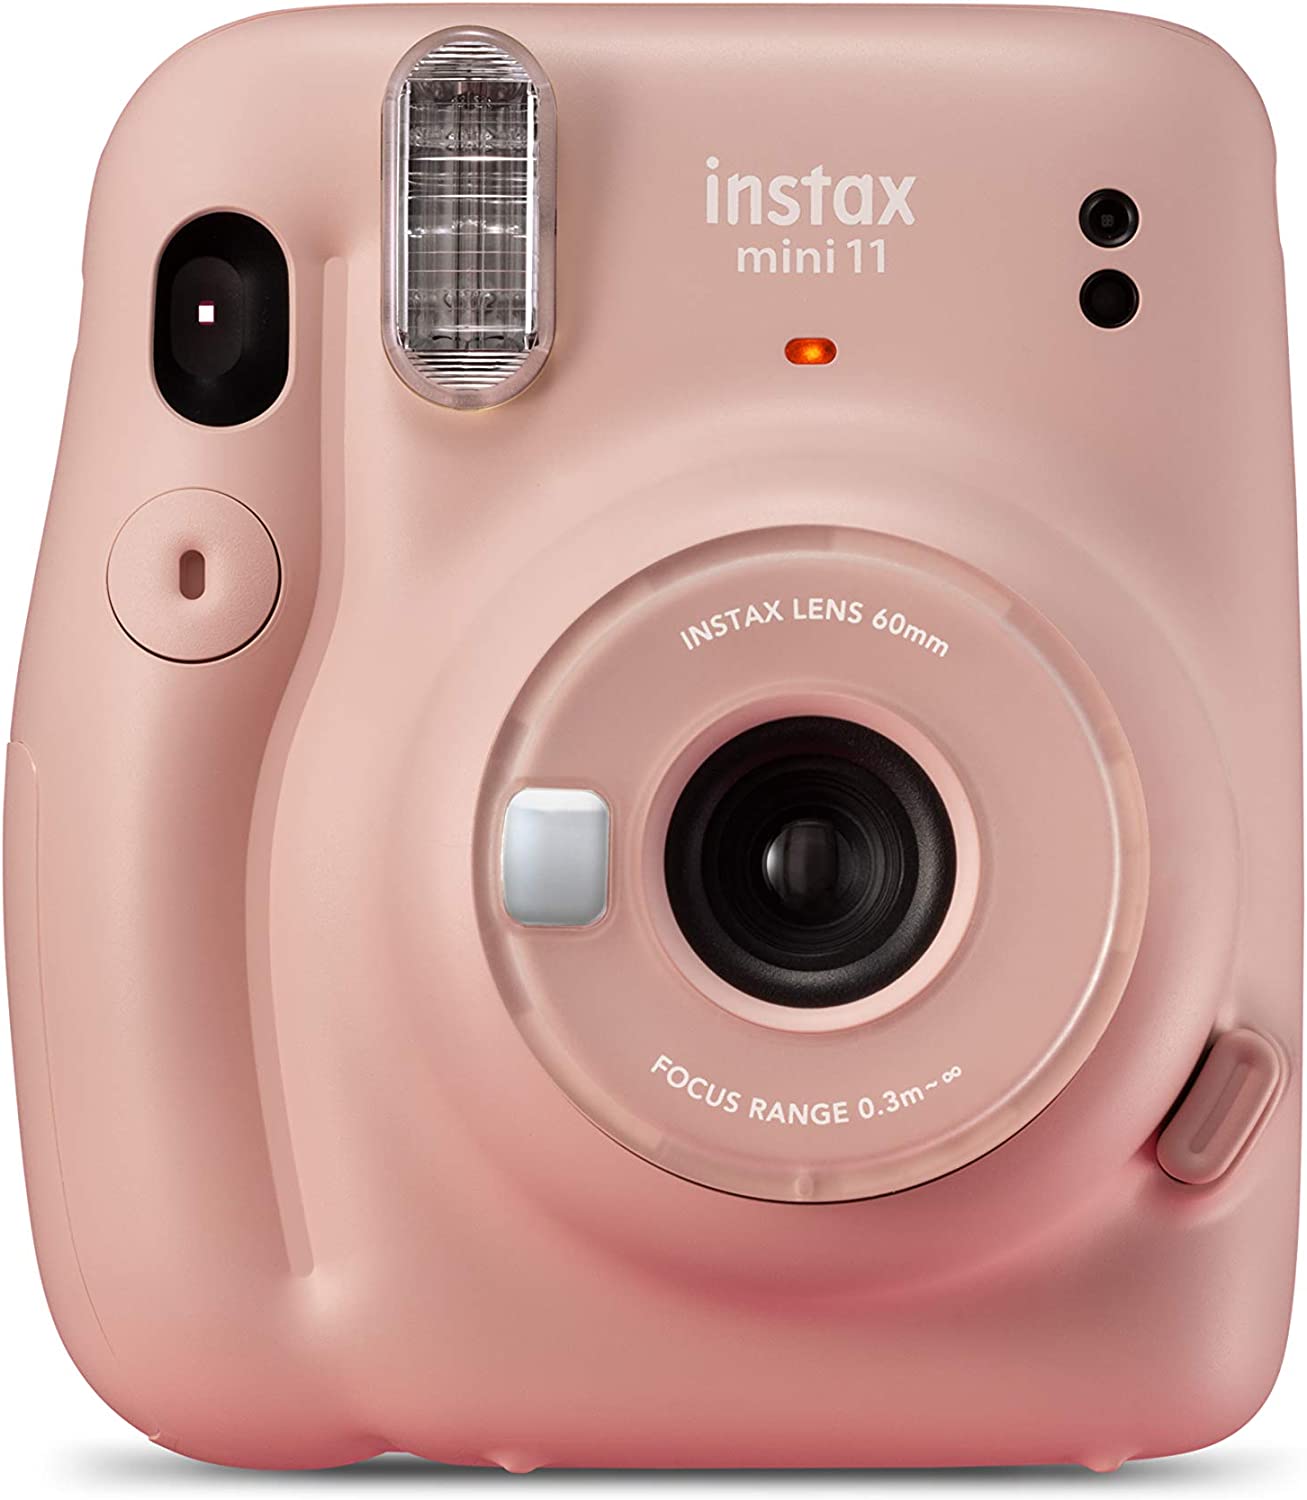 Fujifilm Instax Mini 11 Appareil photo instantané rose blush - Taille d'image 62x46mm - Flash automatique - Mini miroir selfie - Dragonne et 2 boutons d'obturation différents